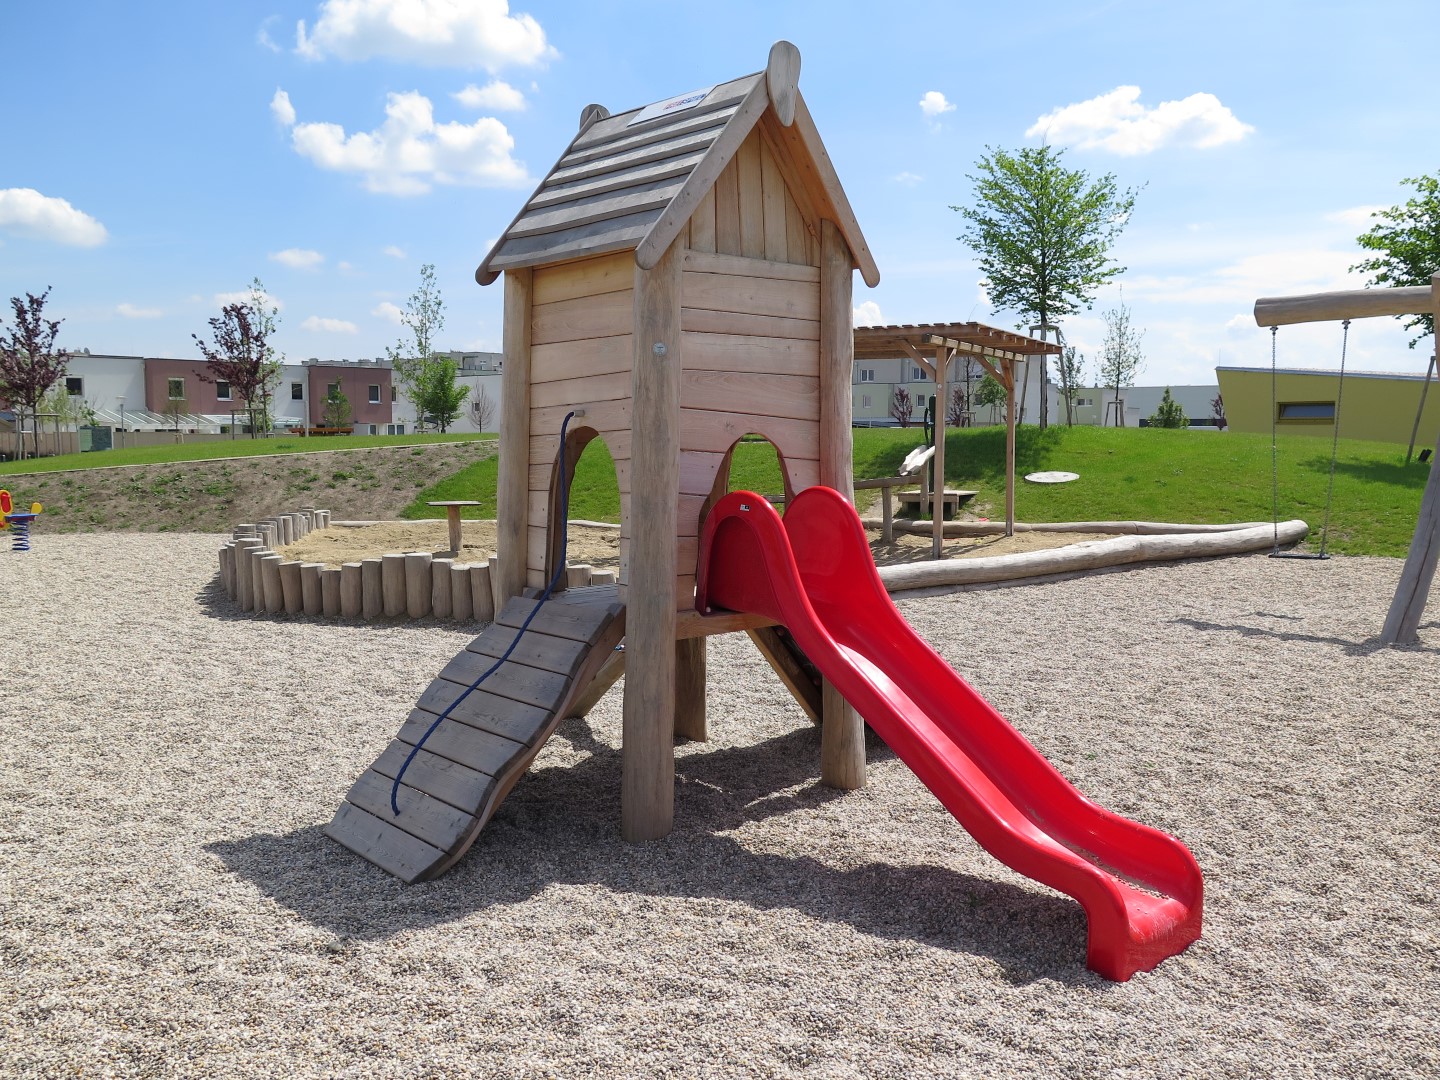 Rutschenturm Lea für Kleinkinder auf dem Spielplatz im Freien